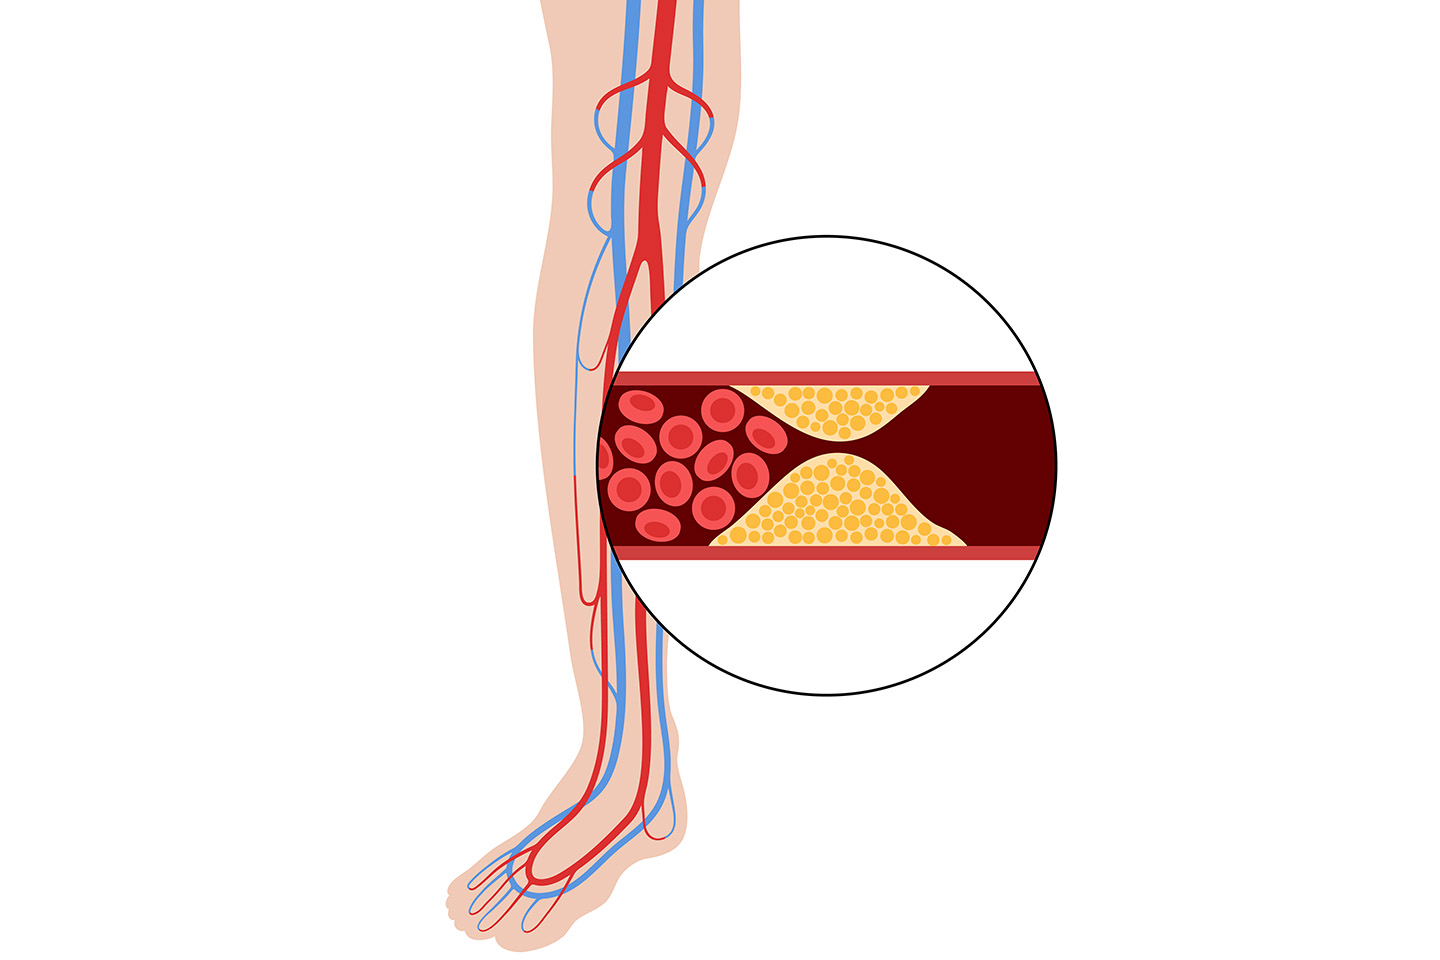 Understanding Peripheral Arterial Disease Treatment with Below the Knee (BTK) Scaffolds